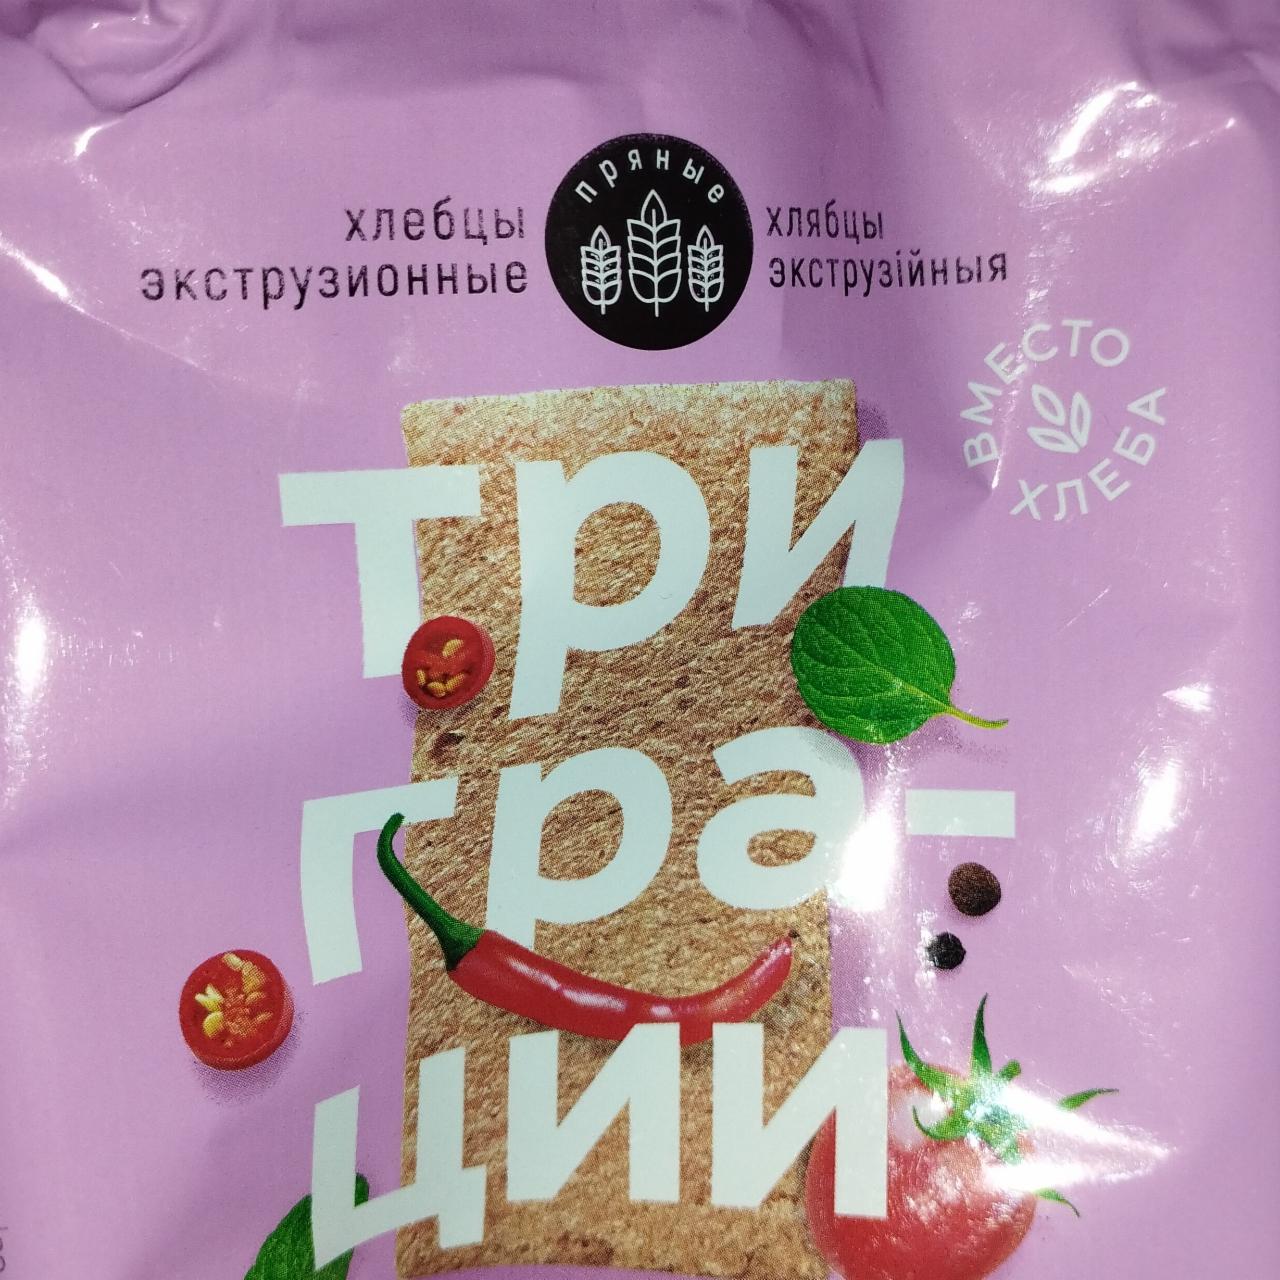 Фото - Хлебцы экструзионные с томатом, орегано и перчиком чили Три грации Витебскхлебпром